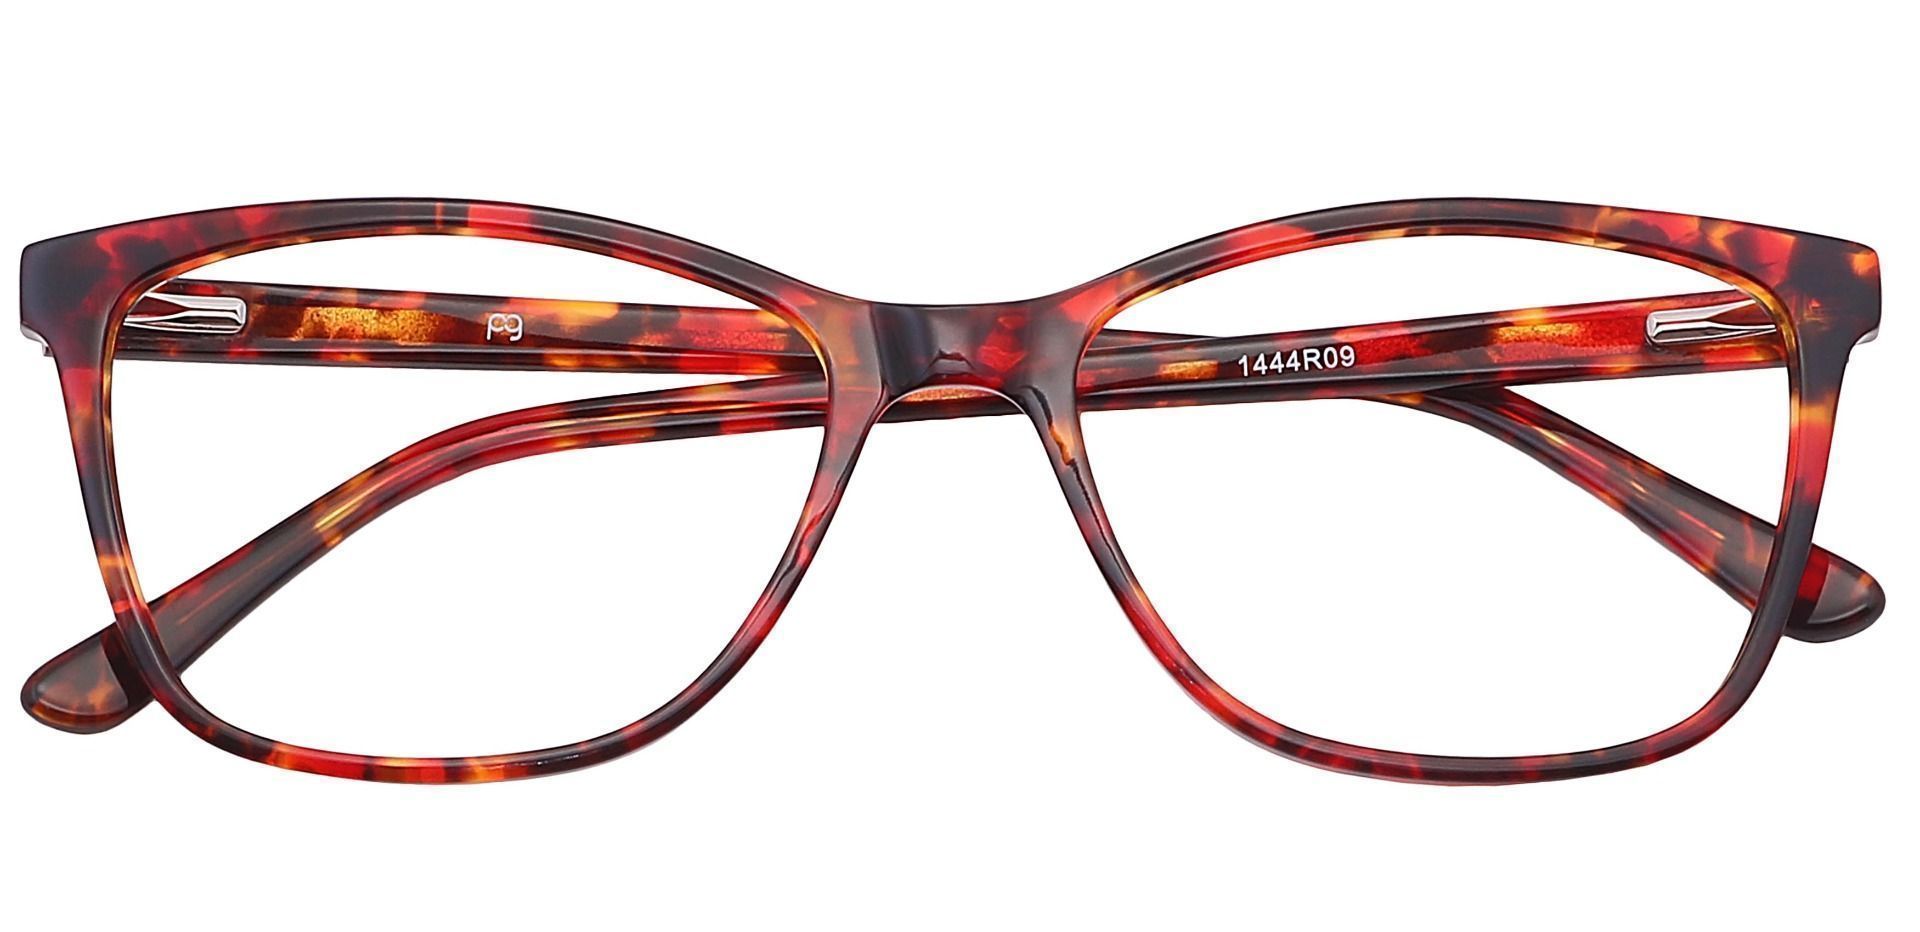 Antonia Square Progressive Glasses - Red